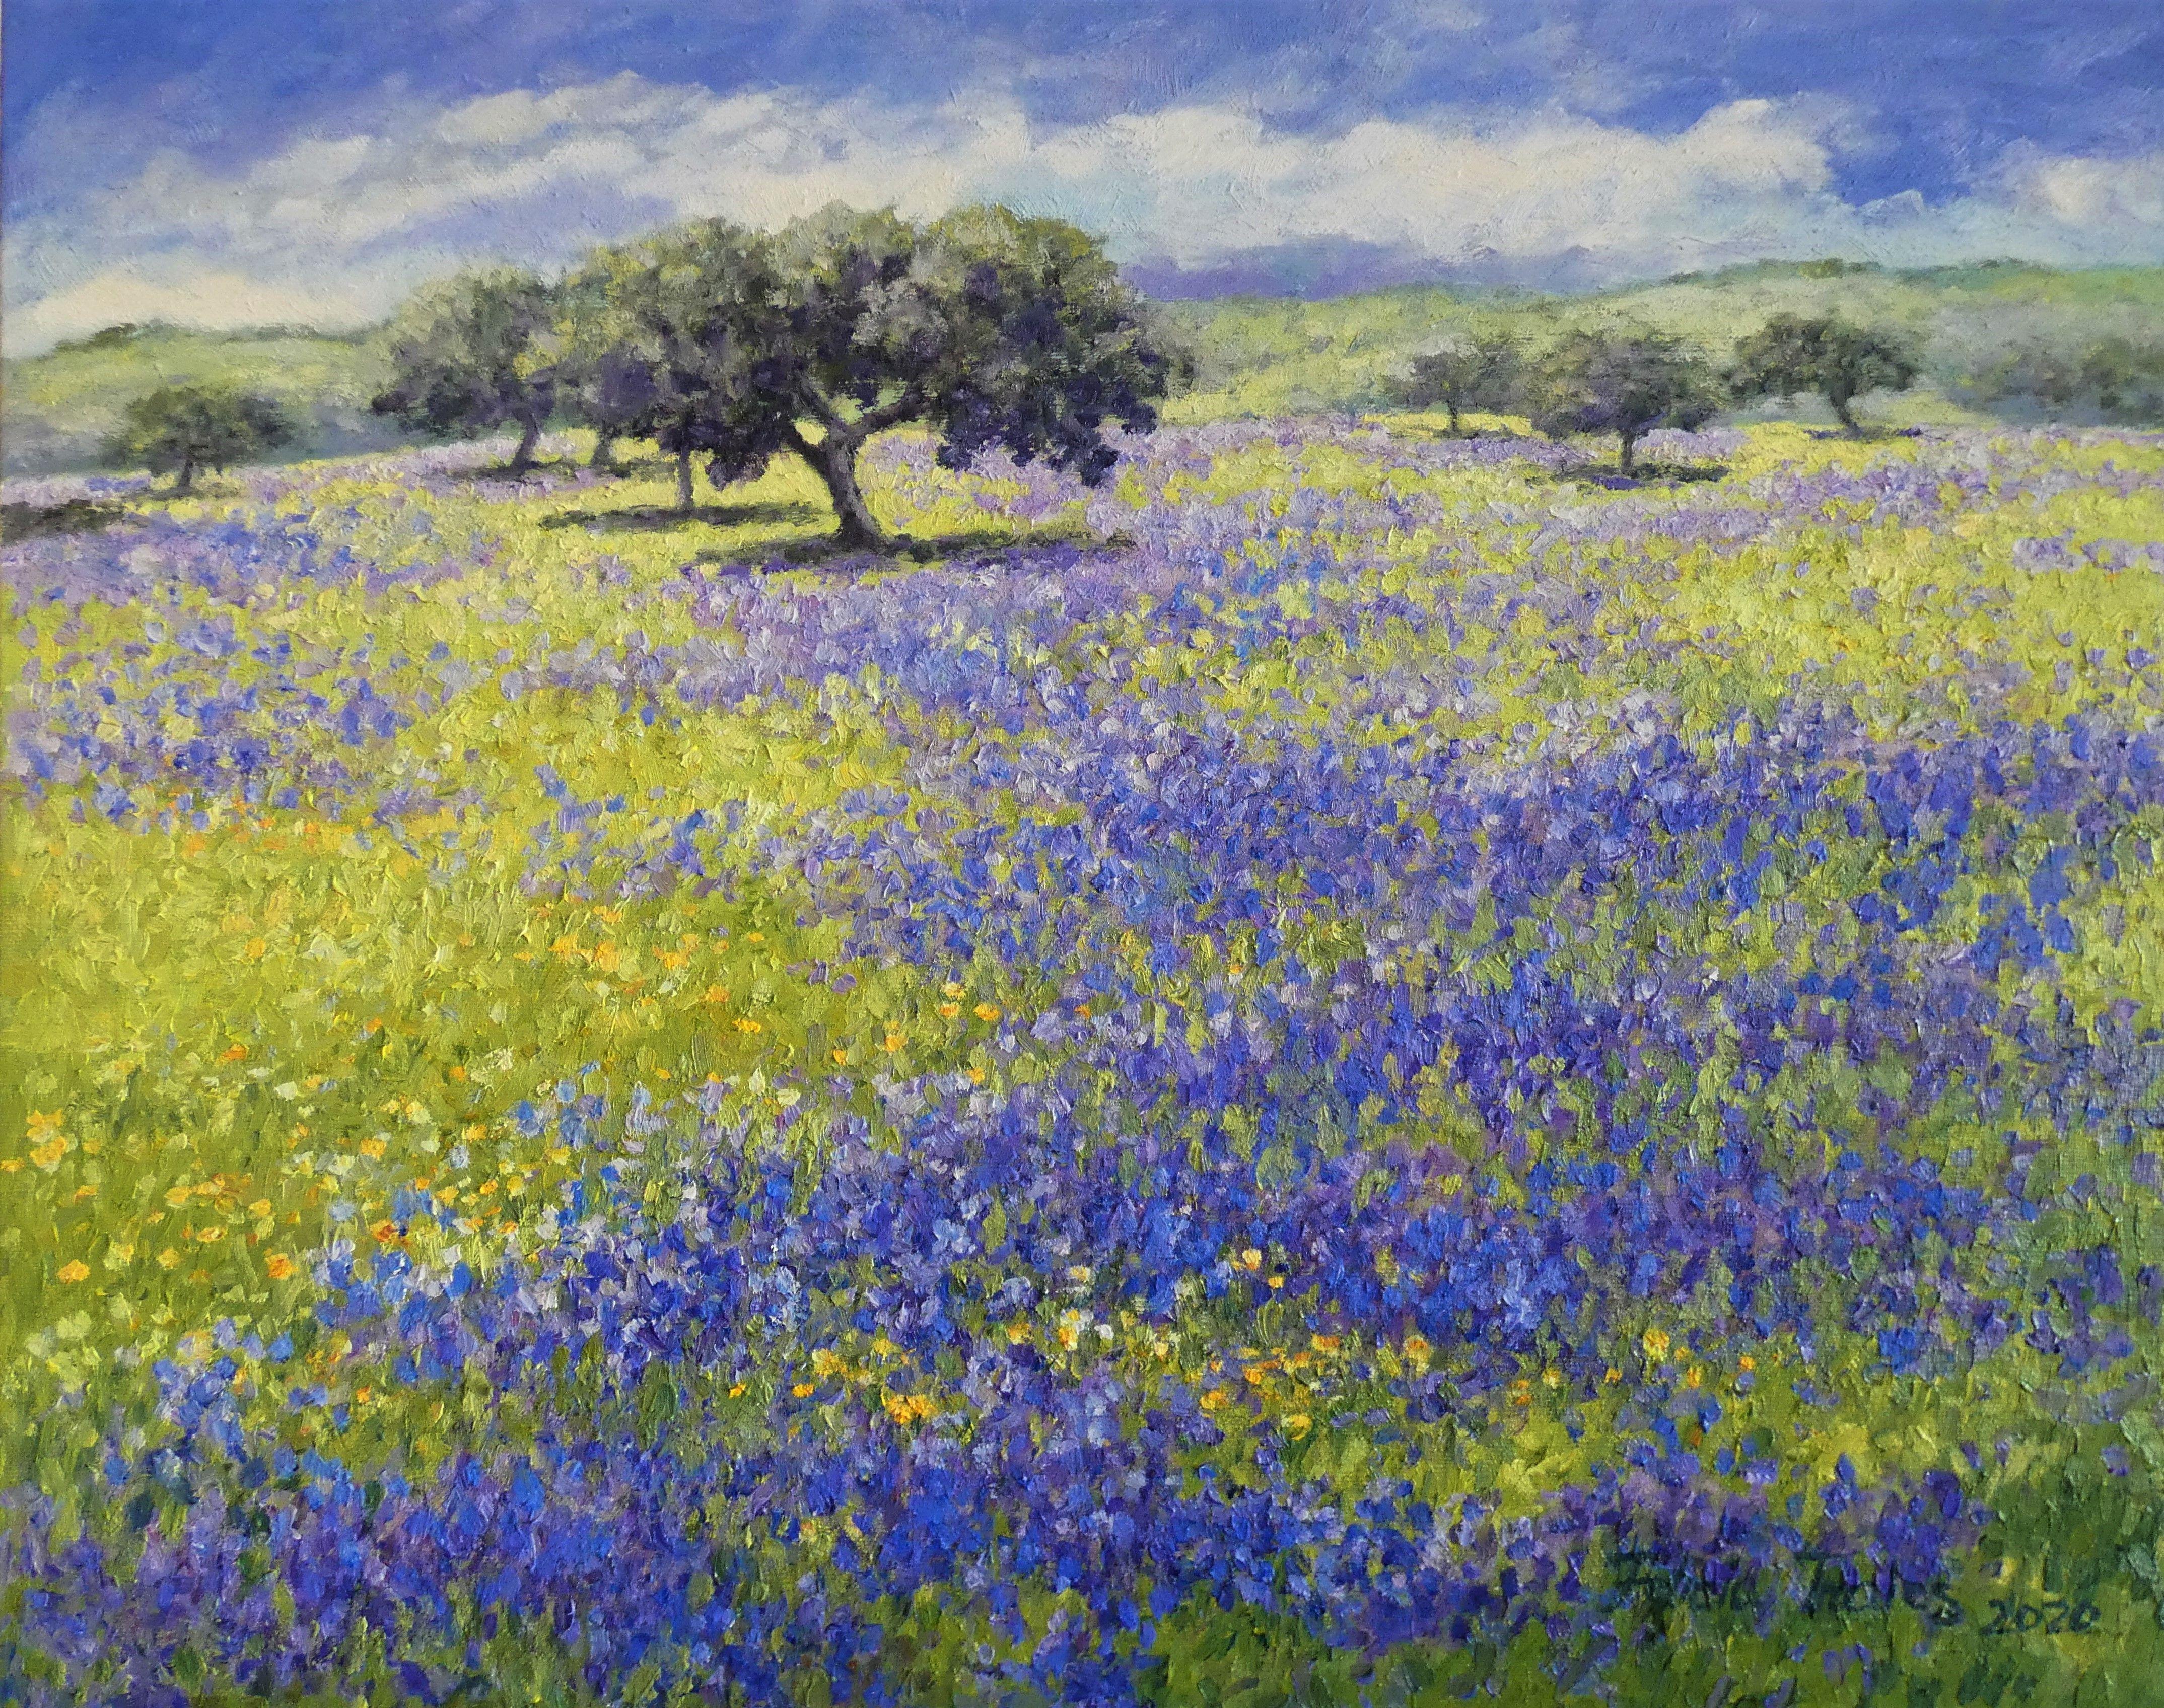 Landscape Painting Felicia Trales - Printemps violet, peinture, huile sur toile